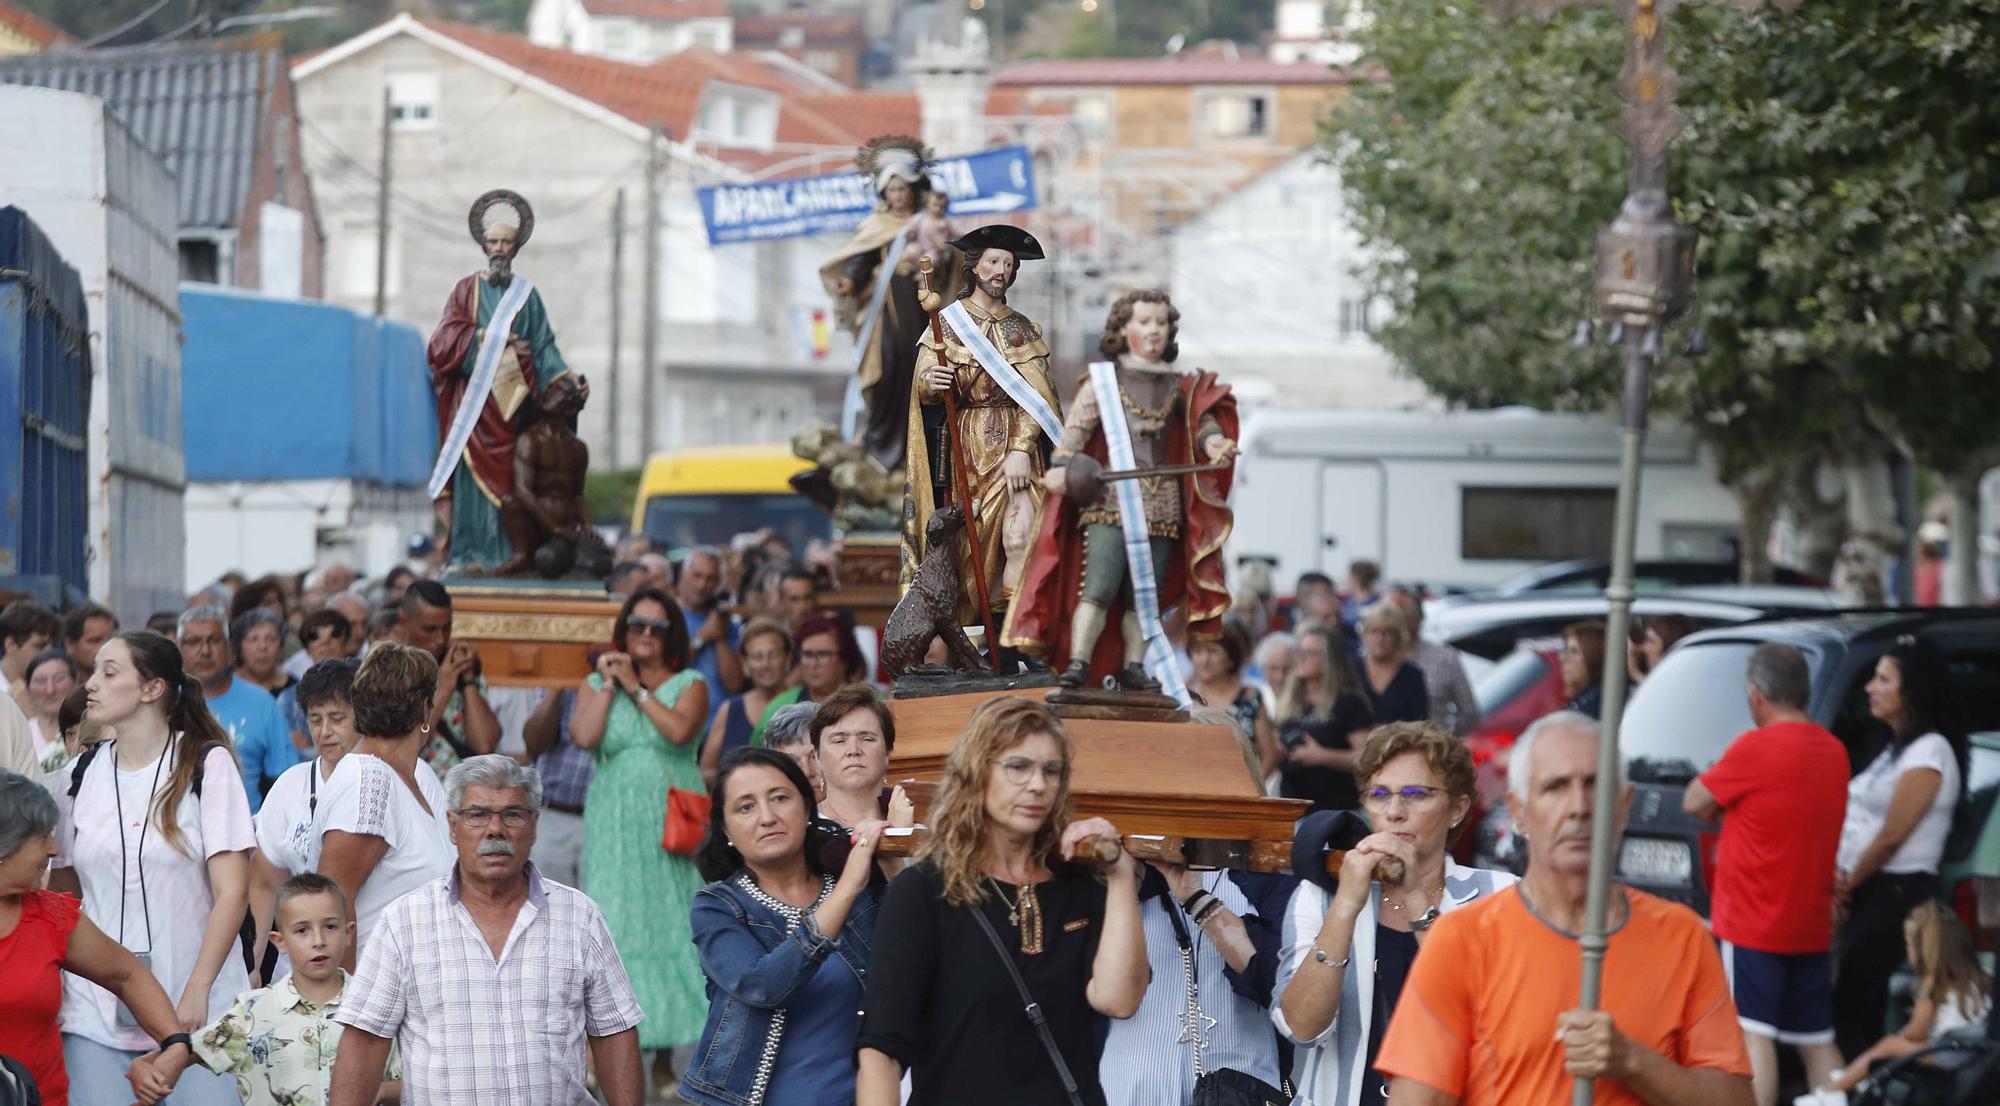 Fiestas en Moaña: Los "tercos y festeiros" de Meira celebran Sametolaméu con un pregonero de lujo